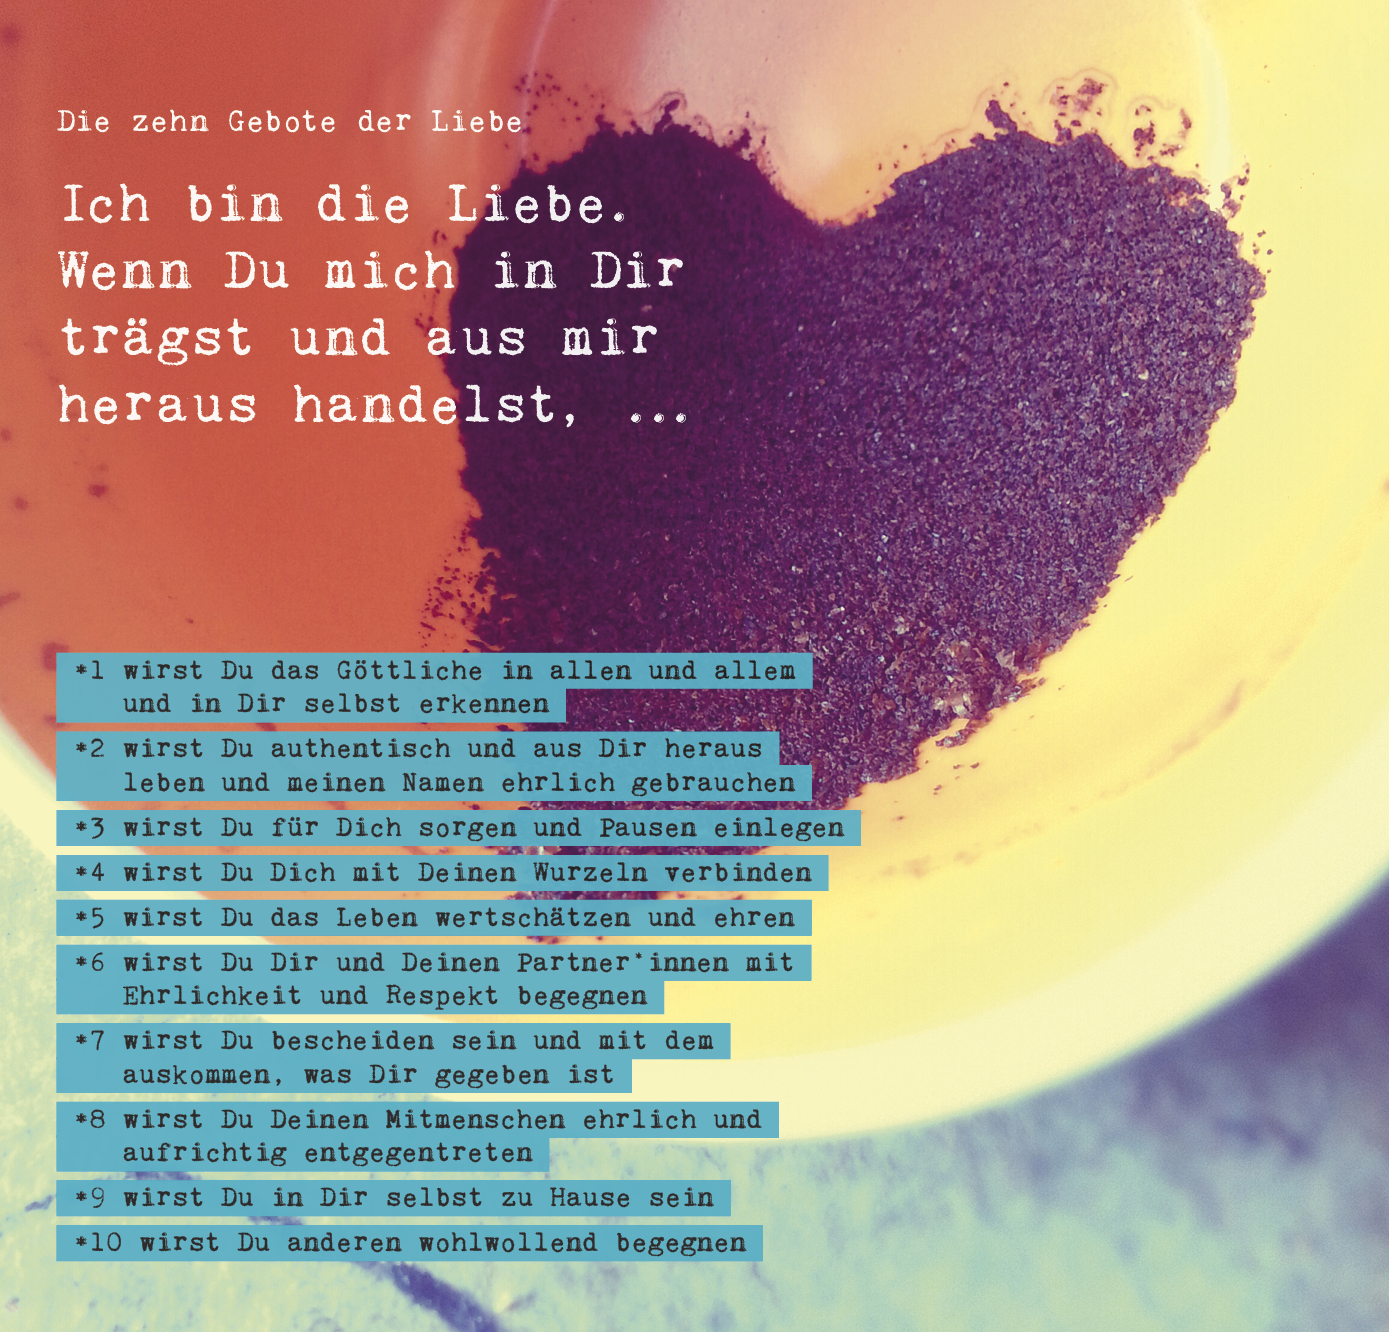 10 Gebote der Liebe (c) Bild/Text/Collage: Christian Lück (die-sehleute.de) In: Pfarrbriefservice.de